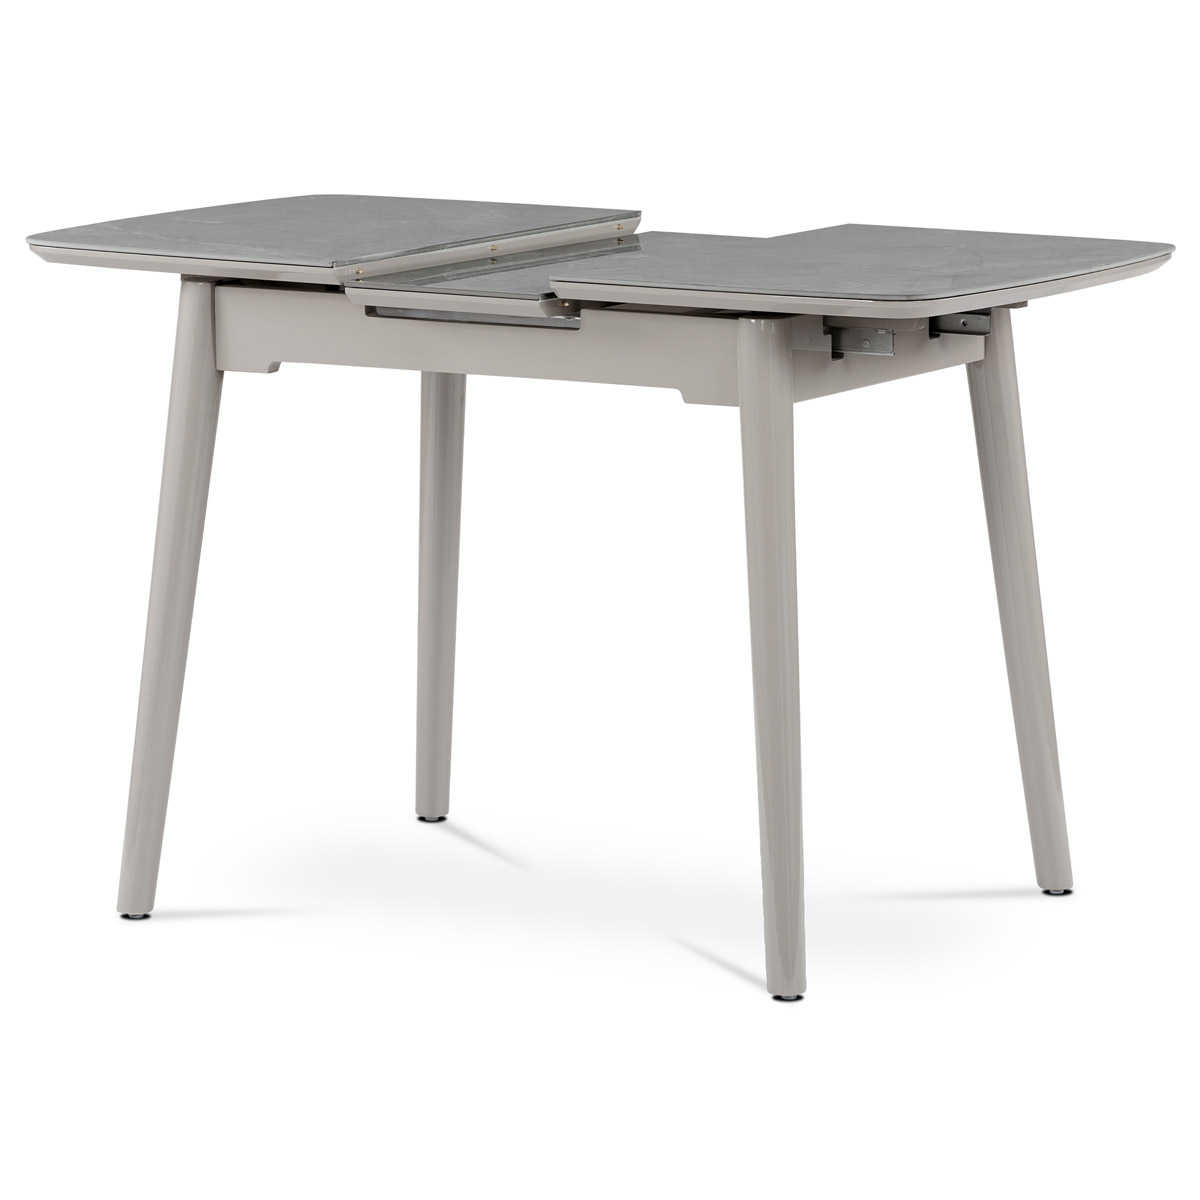 Jídelní stůl 110+30x75 cm, keramická deska šedý mramor, masiv, šedý vysoký lesk - HT-401M GREY